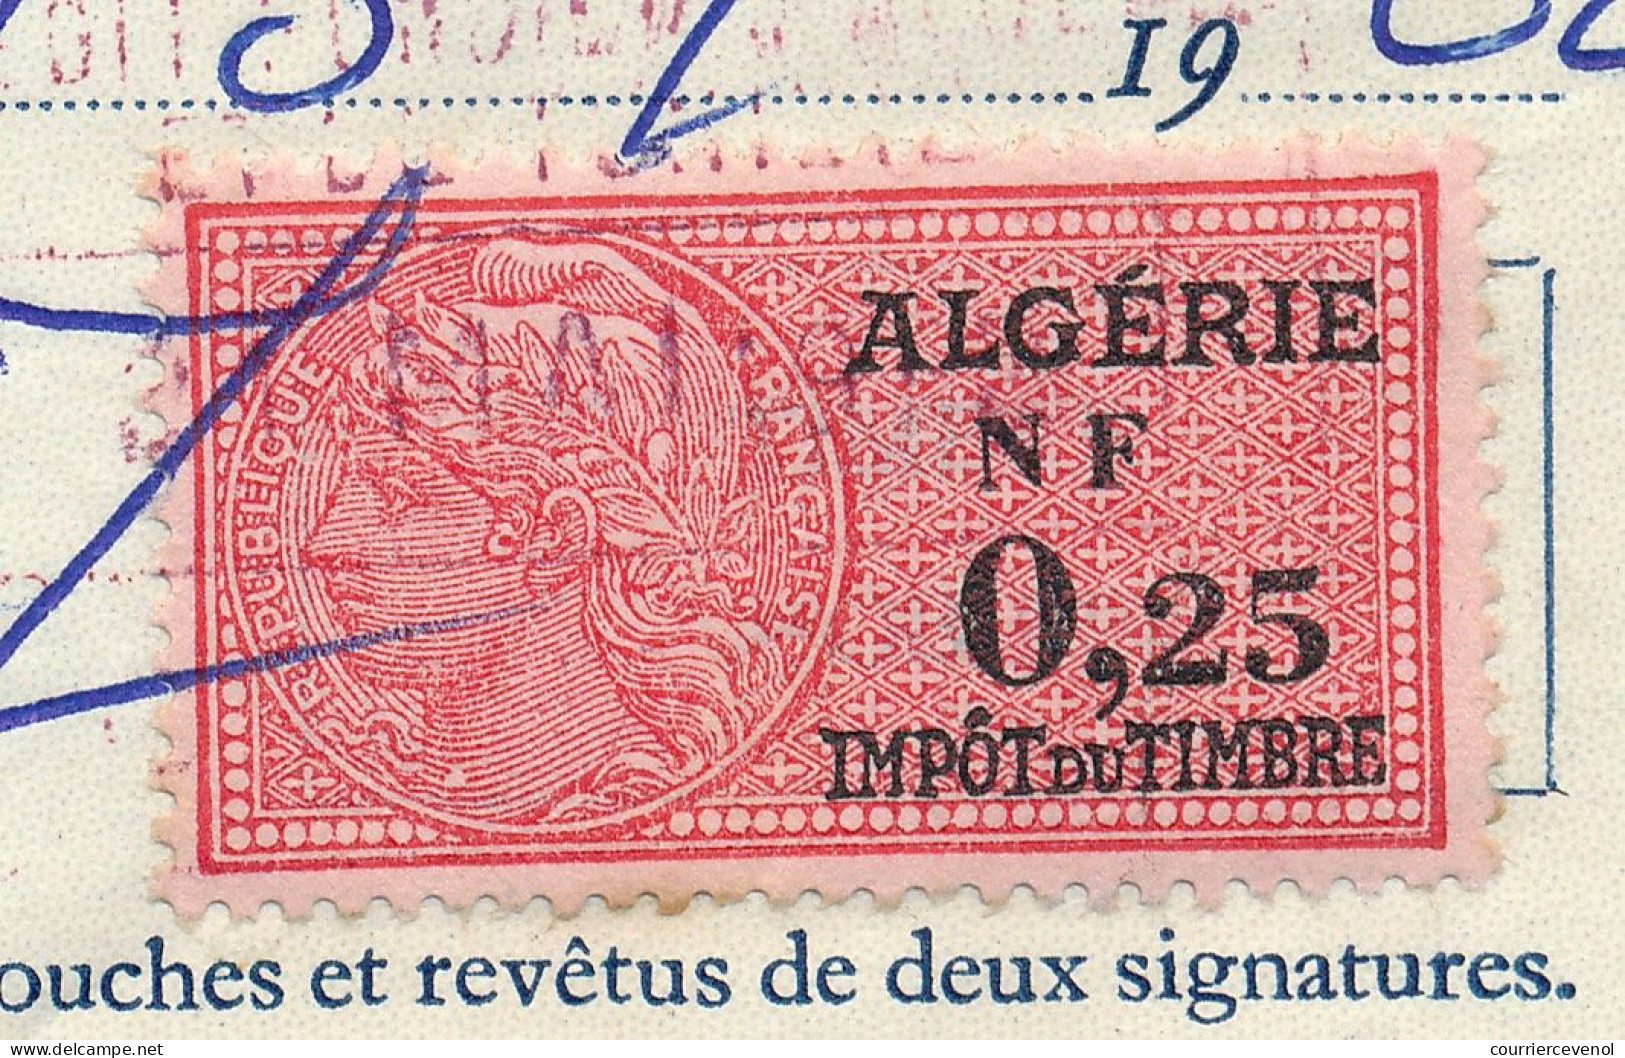 ALGERIE - 2 Traites Crédit Foncier D'Algérie Et De Tunisie - Fiscaux 0,25NF Algérie - 1962 - Autres & Non Classés